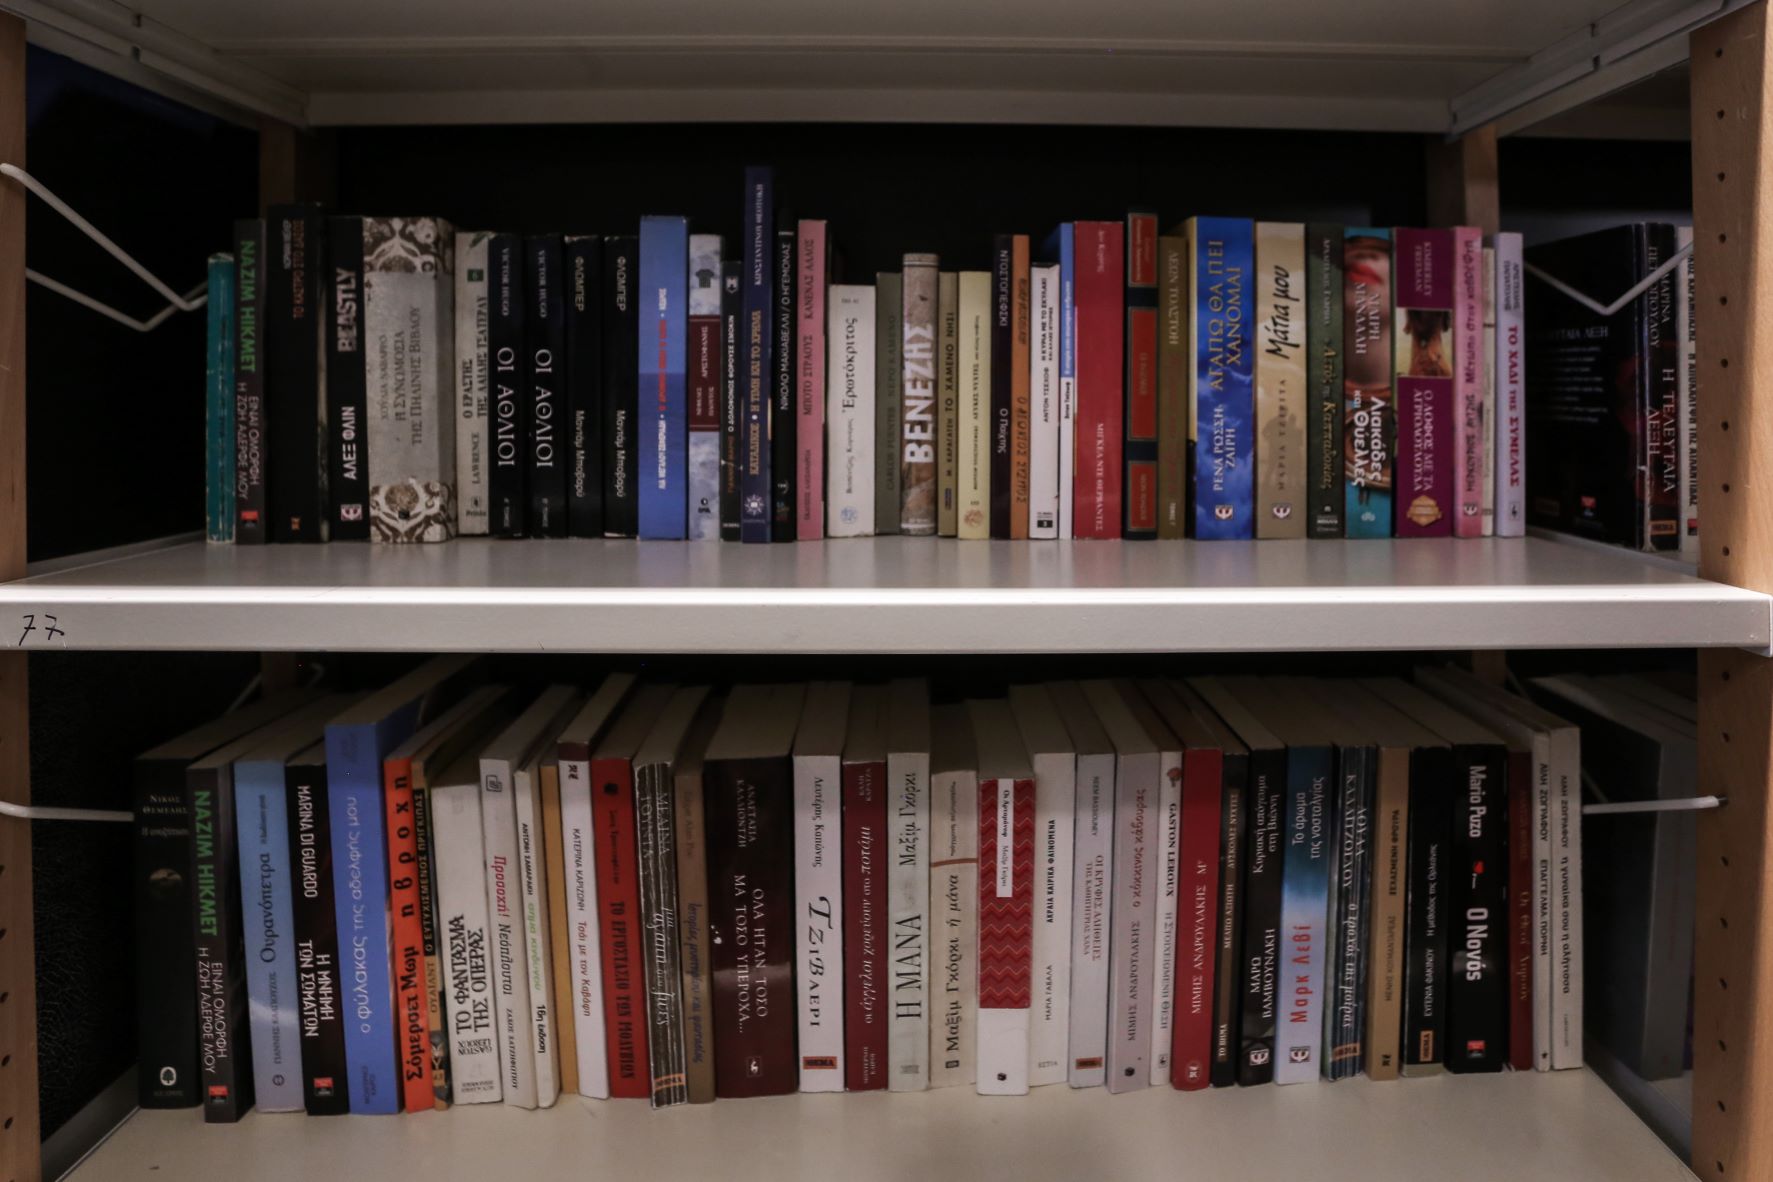 Δημήτρης Παπαστεργίου: “Στη σκοτεινιά των καιρών μας οι βιβλιοθήκες είναι αχτίδα φωτός”